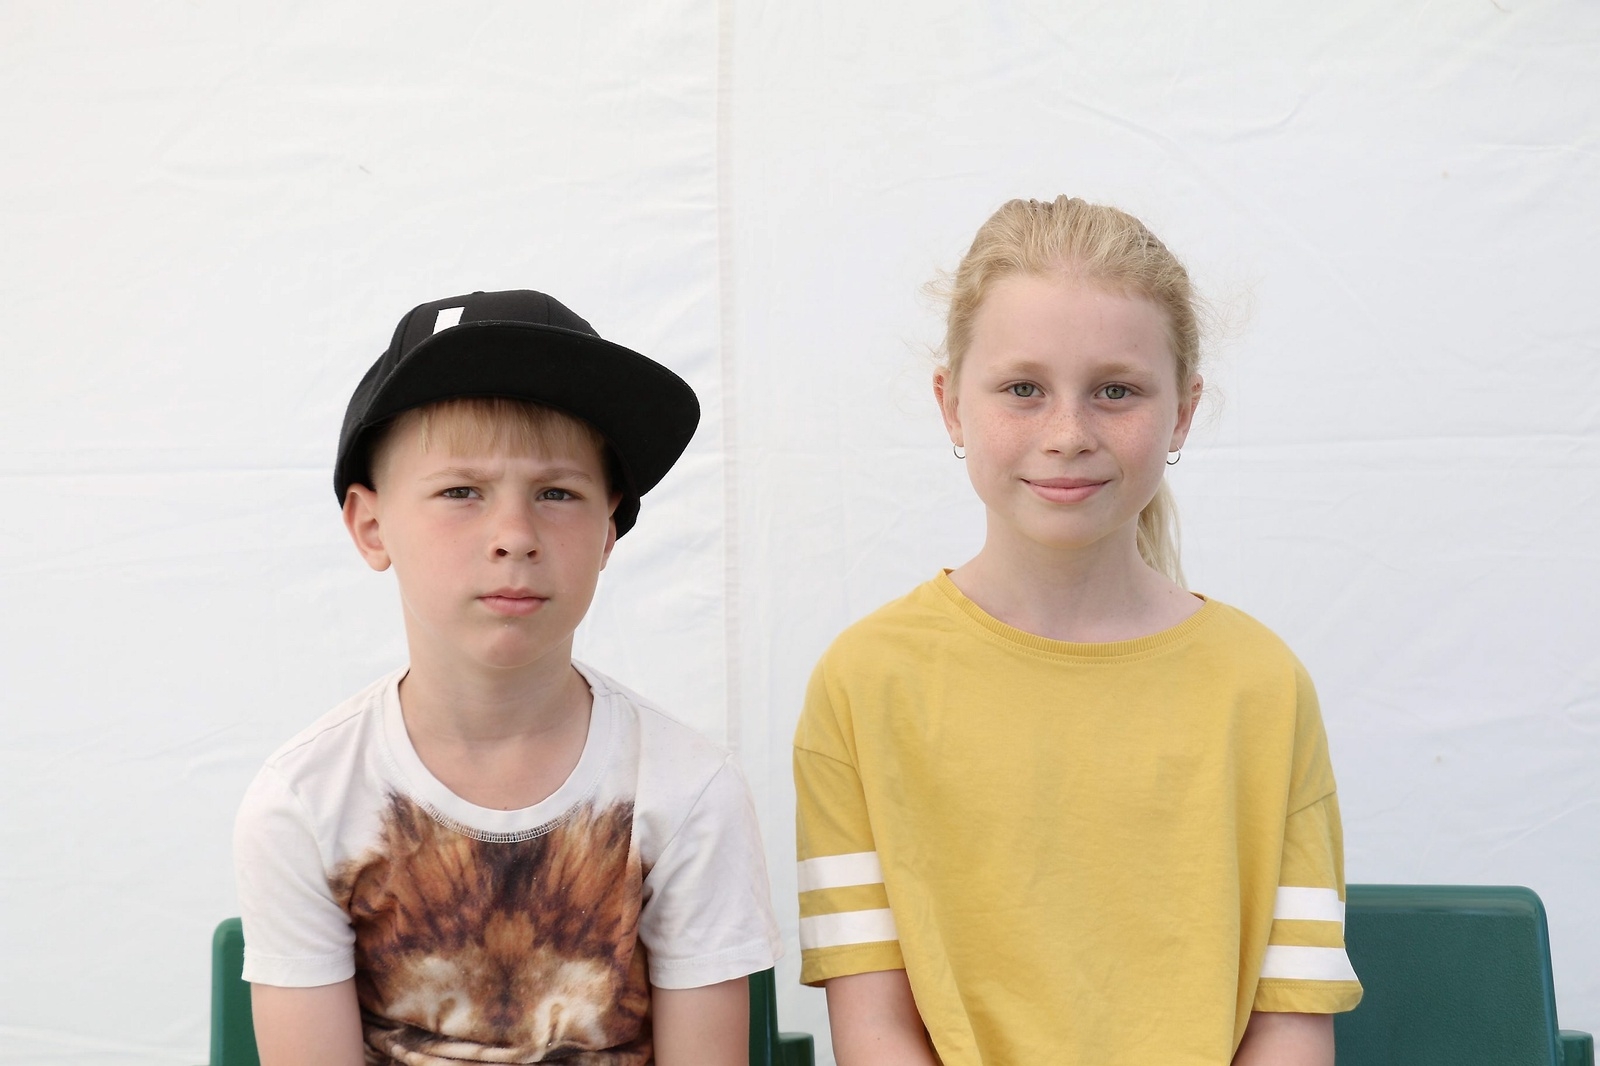 Linnea och Linus Lauber från Hässleholm hälsar till pappa och farmor.
Foto: Nicole Haglund